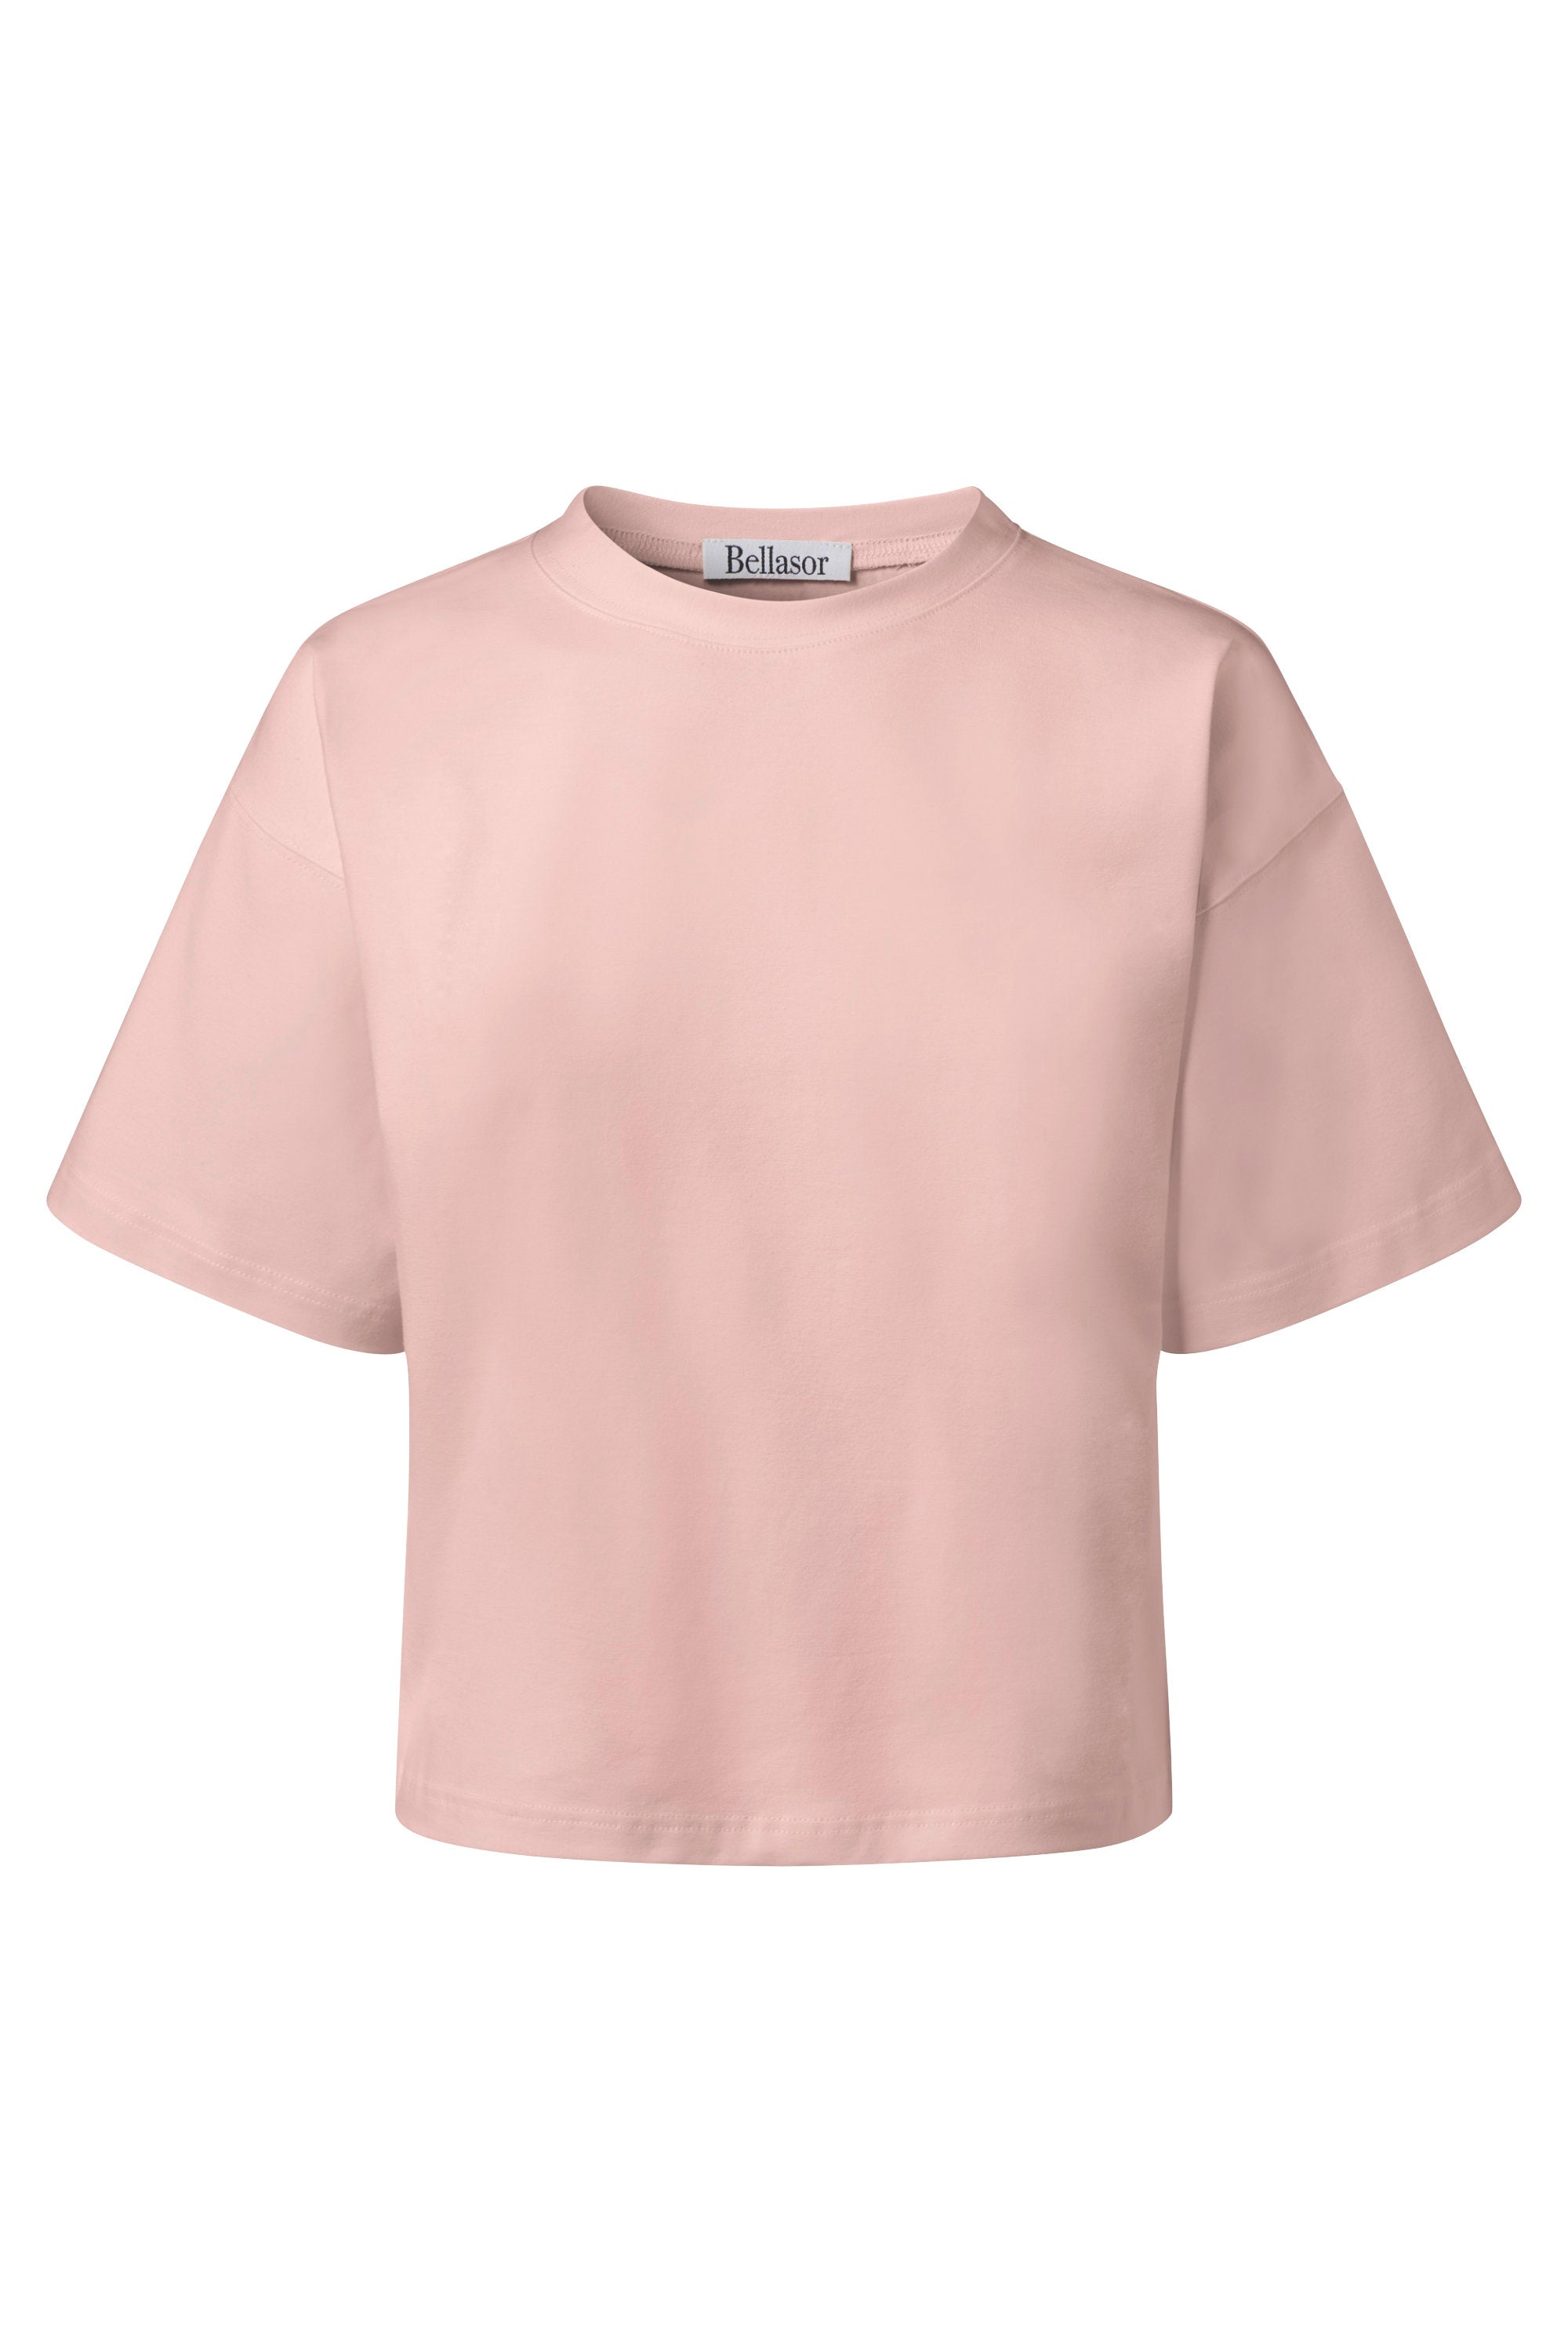 T-Shirt aus Bio-Baumwolle in der Farbe rosa auf weißem Hintergrund.